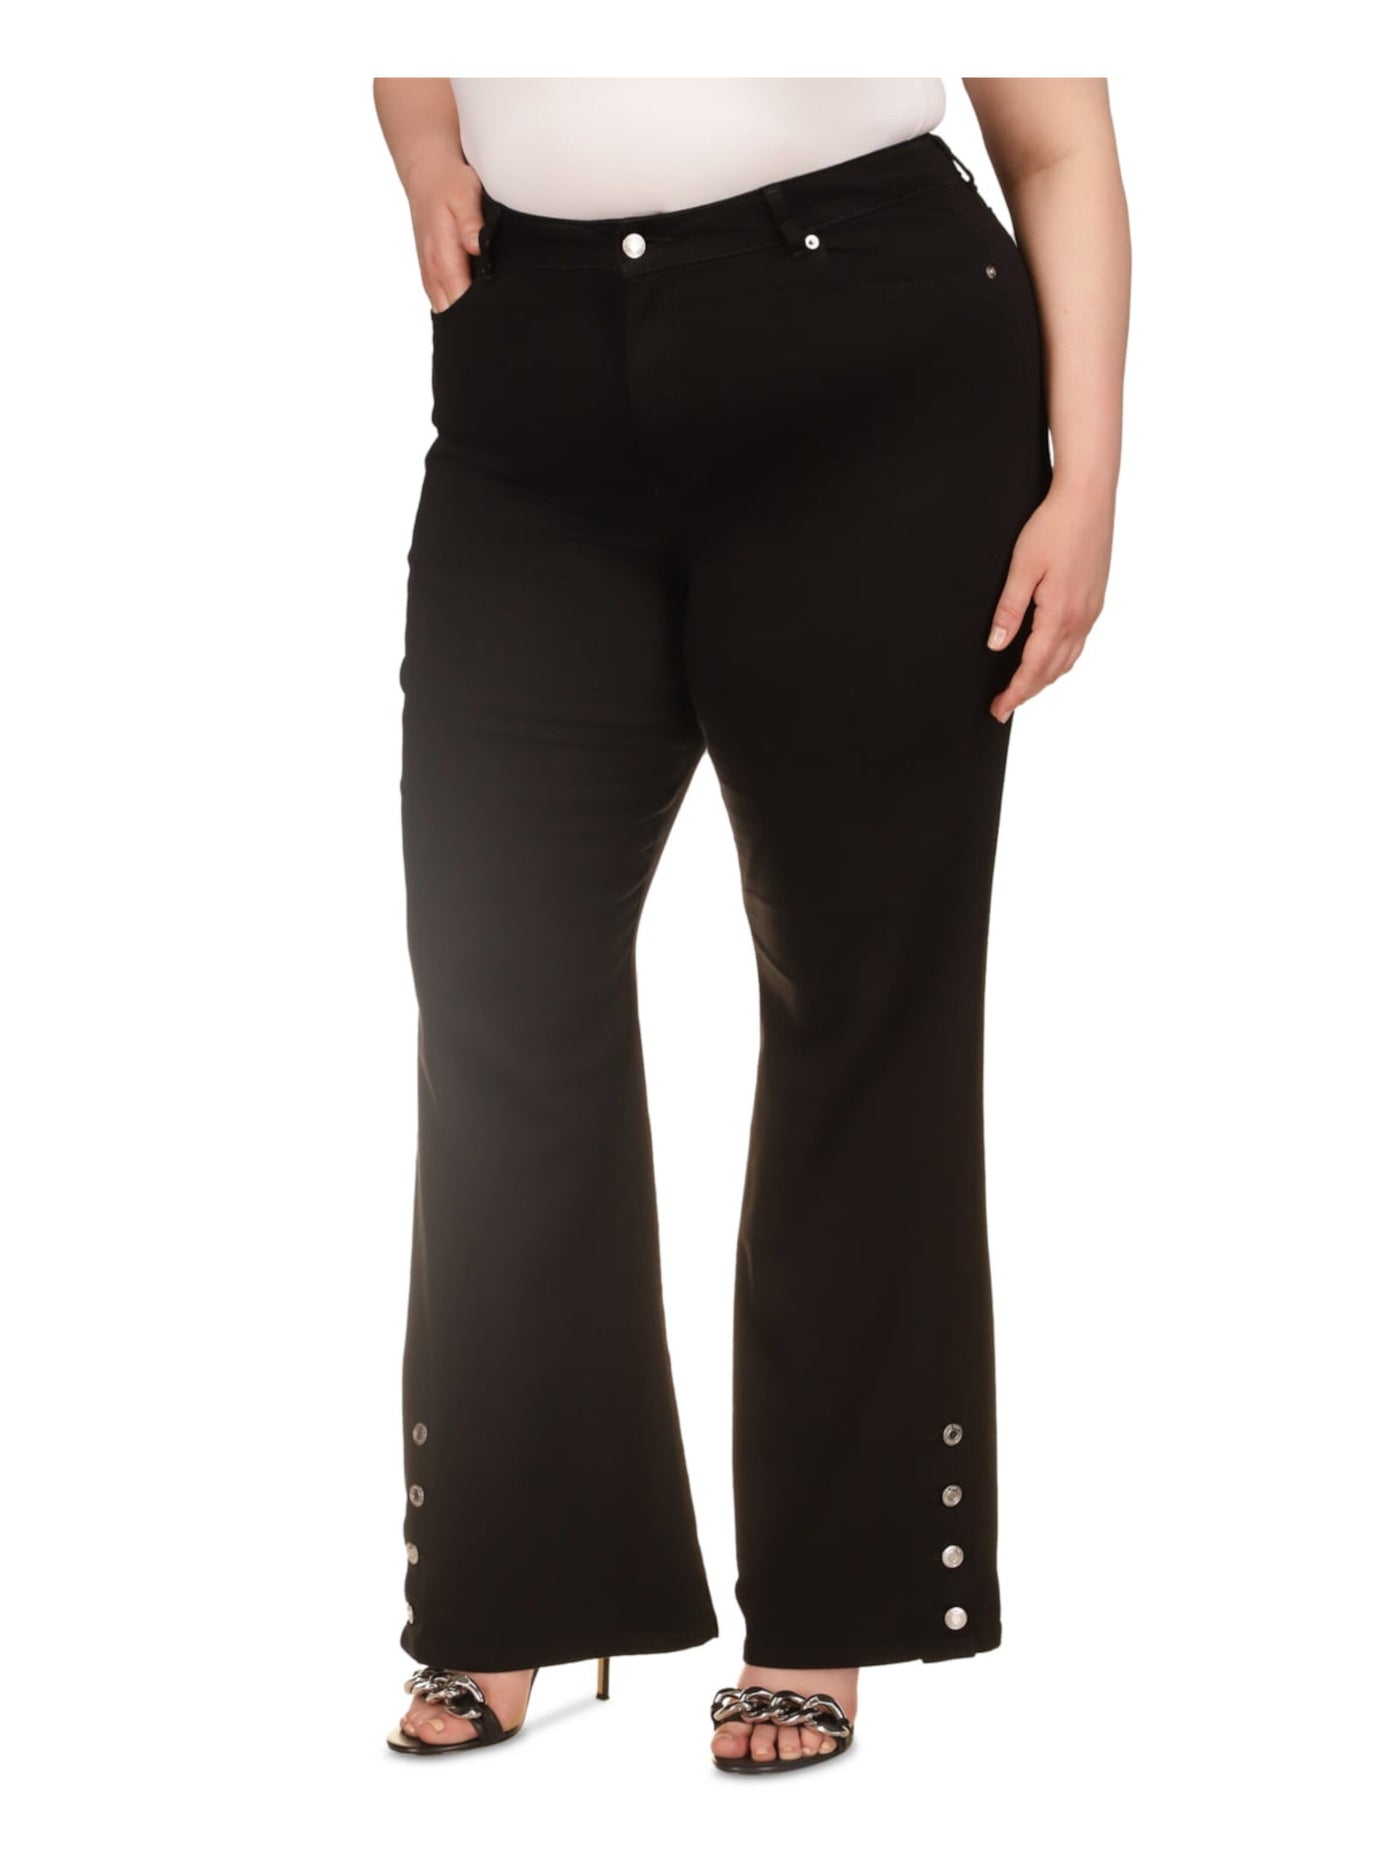 MICHAEL KORS Womens Black Zippered Pocketed Button-hems High Waist Jeans Plus 24W